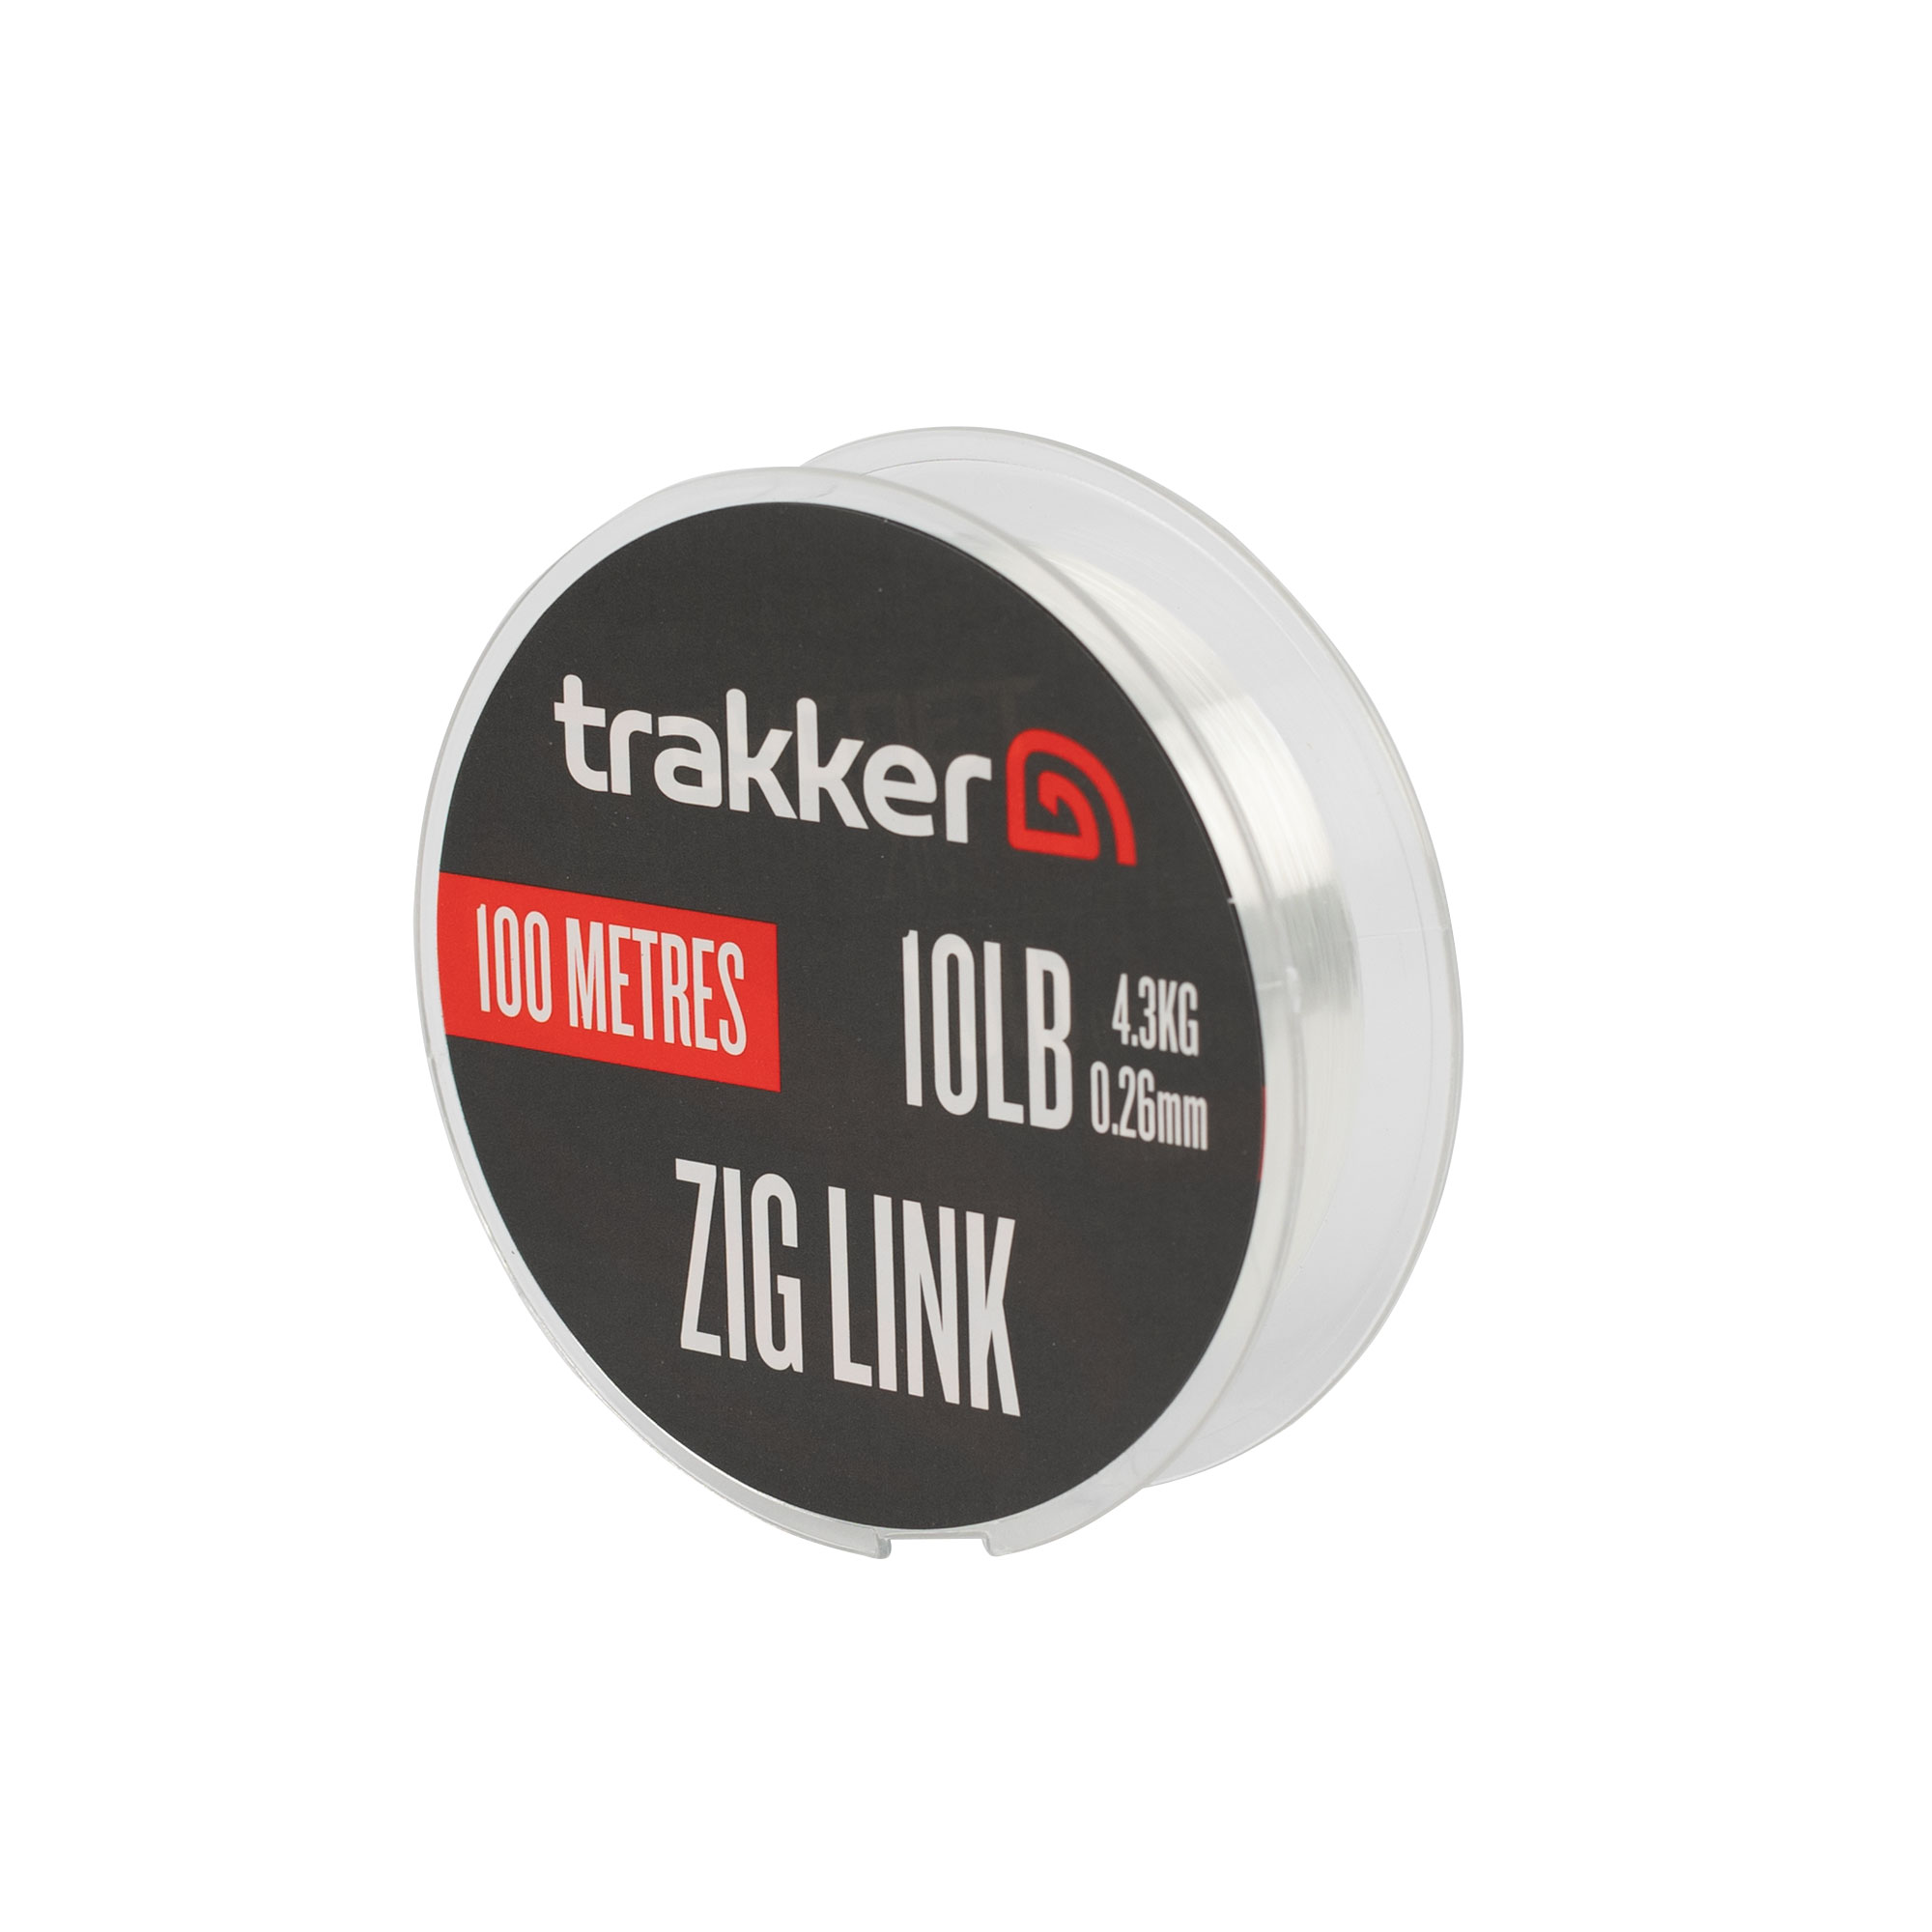 Trakker Zig Link (10lb)(4.30kg)(0.26mm)(100m) TPx5